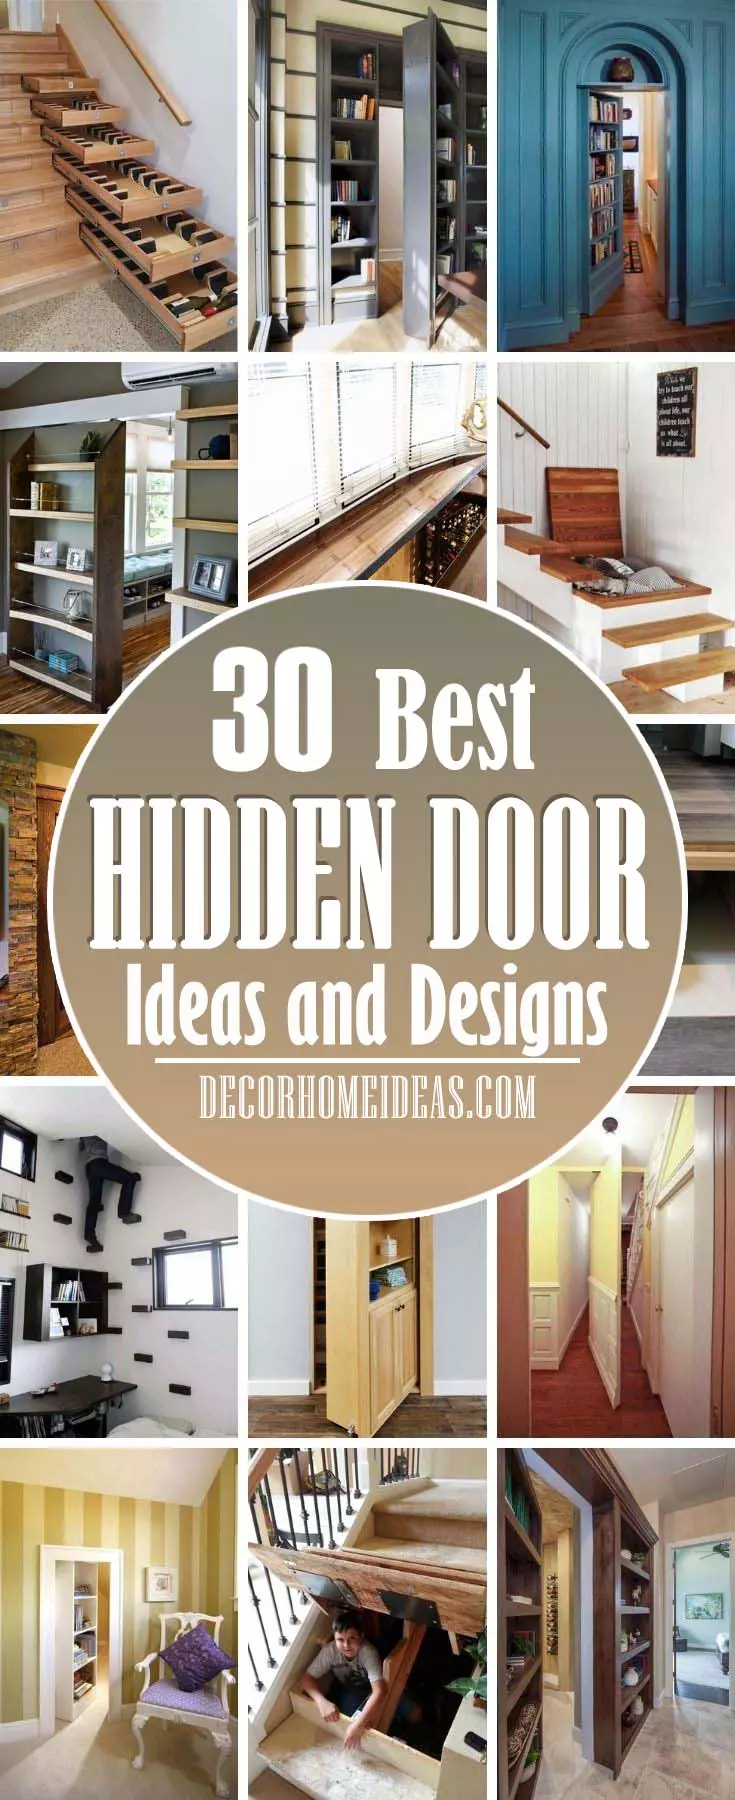 Лучшие умные идеи для скрытых дверей.  Откройте для себя немного веселья и загадок с помощью 50 лучших идей для скрытых дверей.  Исследуйте входы в секретные комнаты с навесными книжными шкафами к стенам и за их пределами.  #decorhomeideas